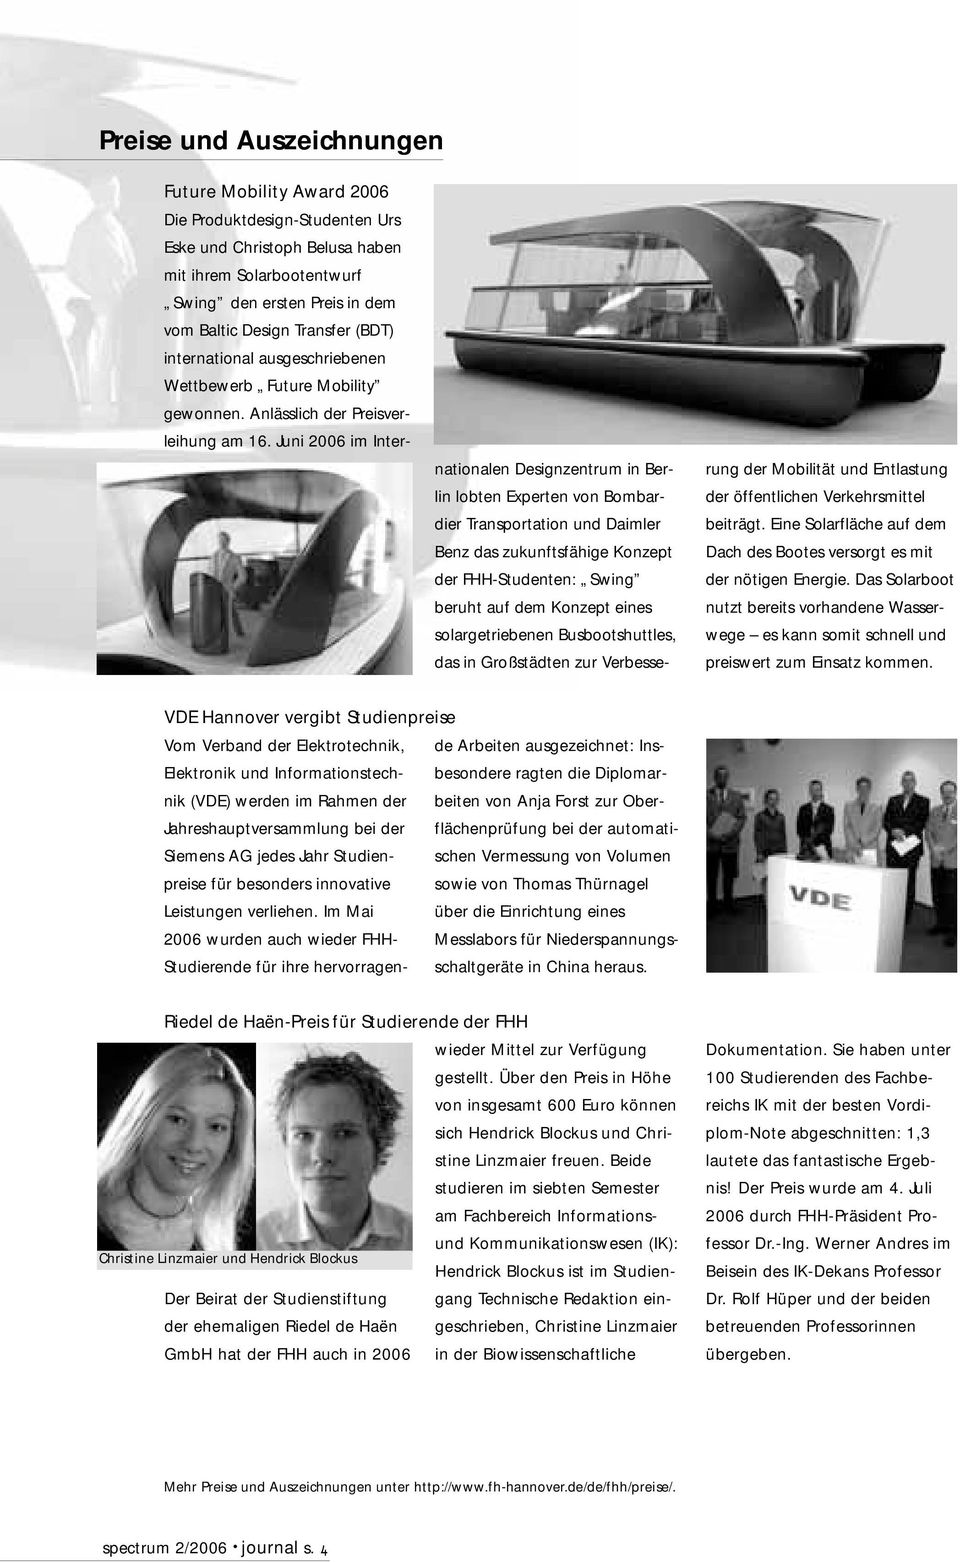 Juni 2006 im Internationalen Designzentrum in Berlin lobten Experten von Bombardier Transportation und Daimler Benz das zukunftsfähige Konzept der FHH-Studenten: Swing beruht auf dem Konzept eines